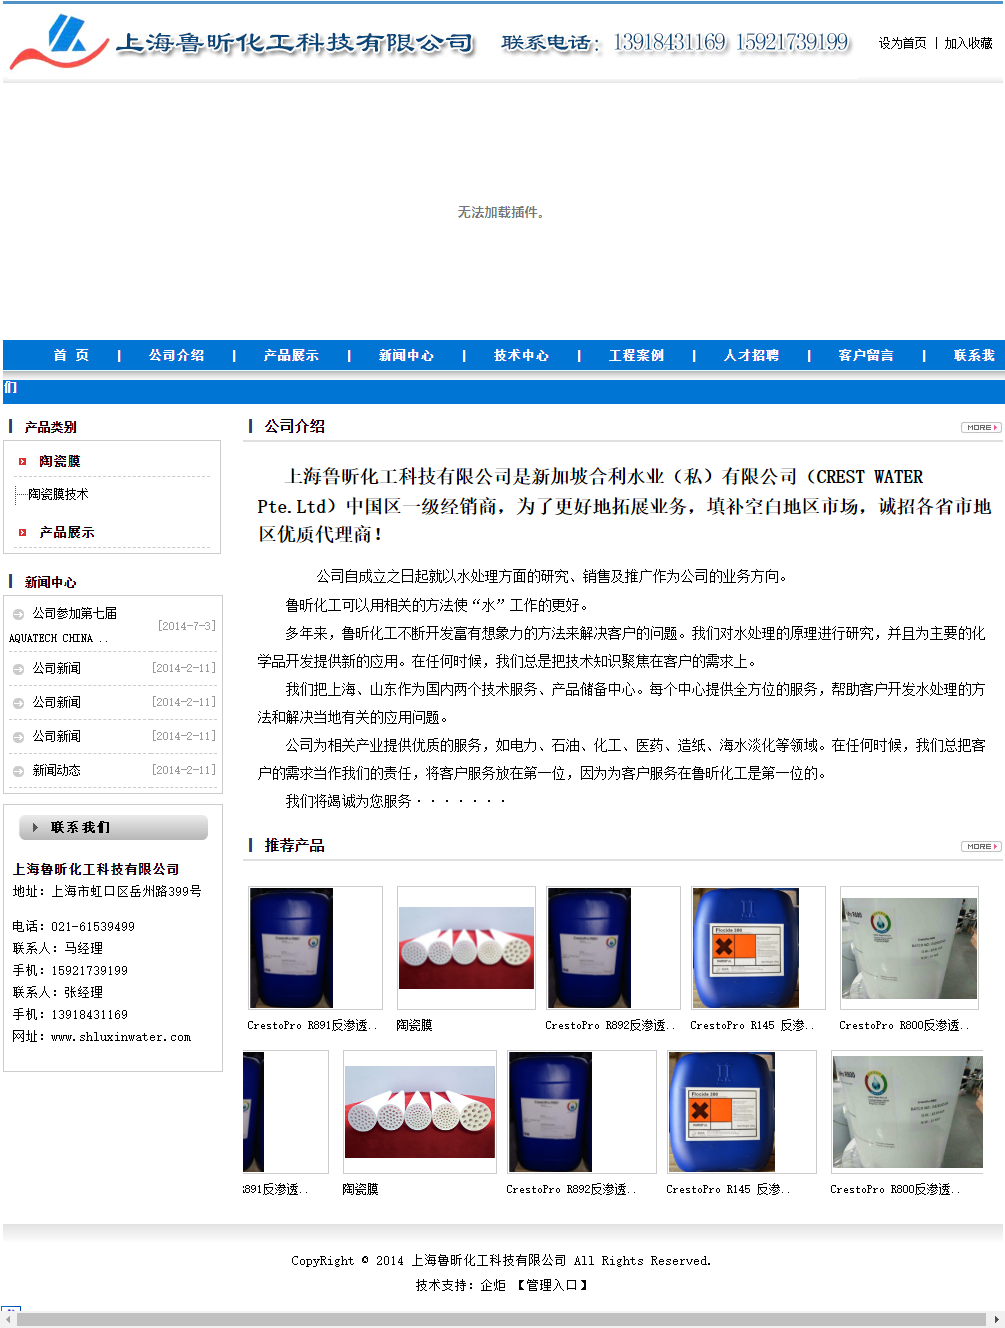 上海鲁昕化工科技有限公司网站案例